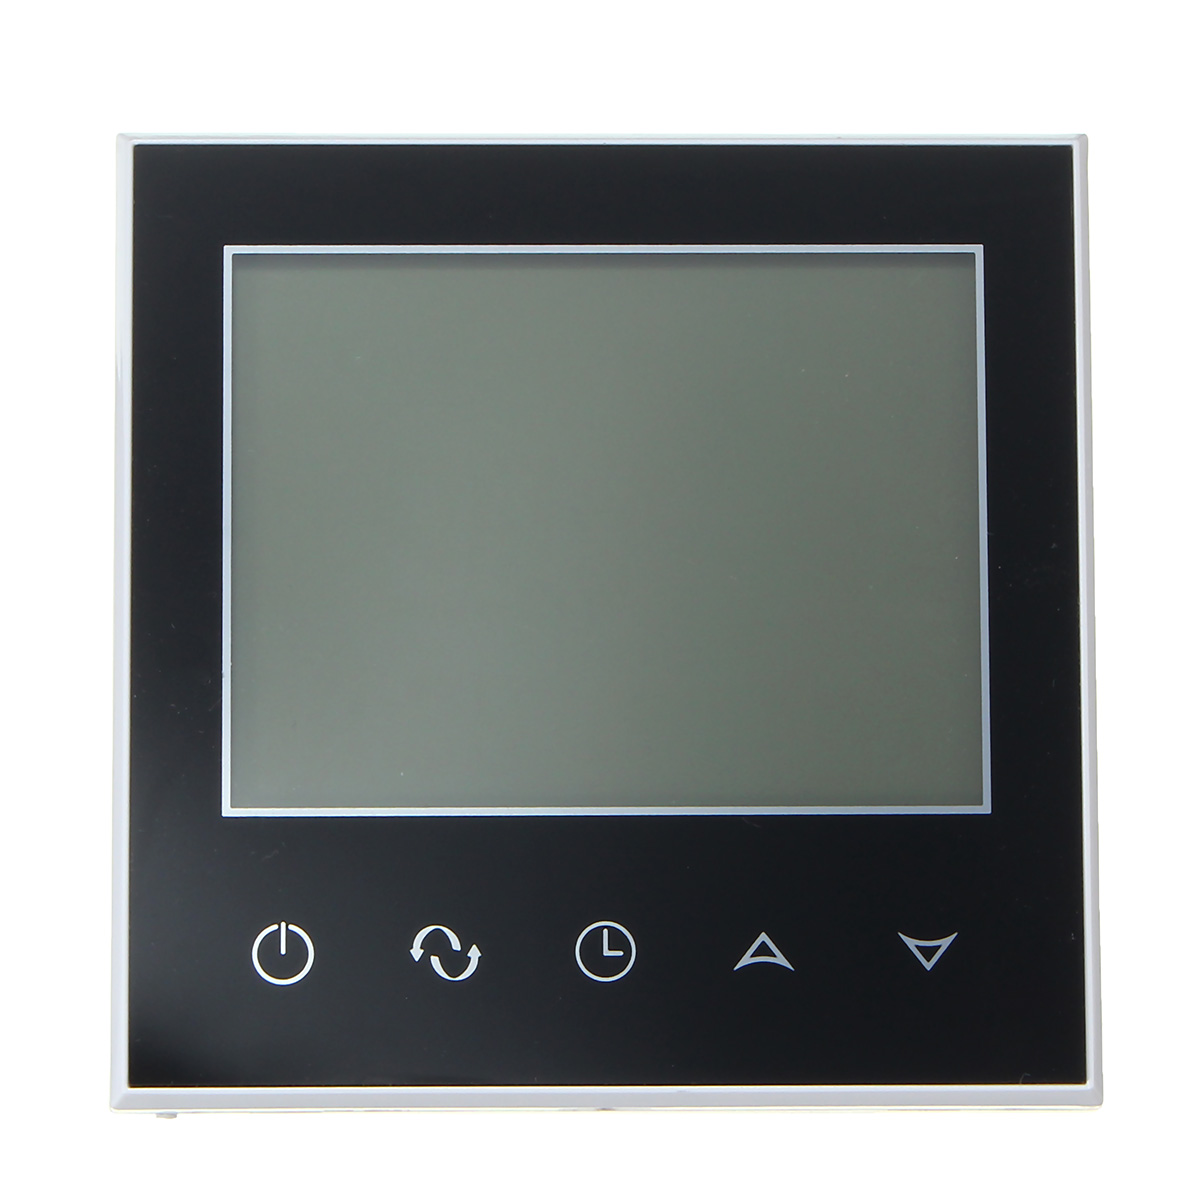 

Цифровой Термометр Термостат Измеритель температуры Программируемый Отопление LCD NTC Цифровой Дисплей